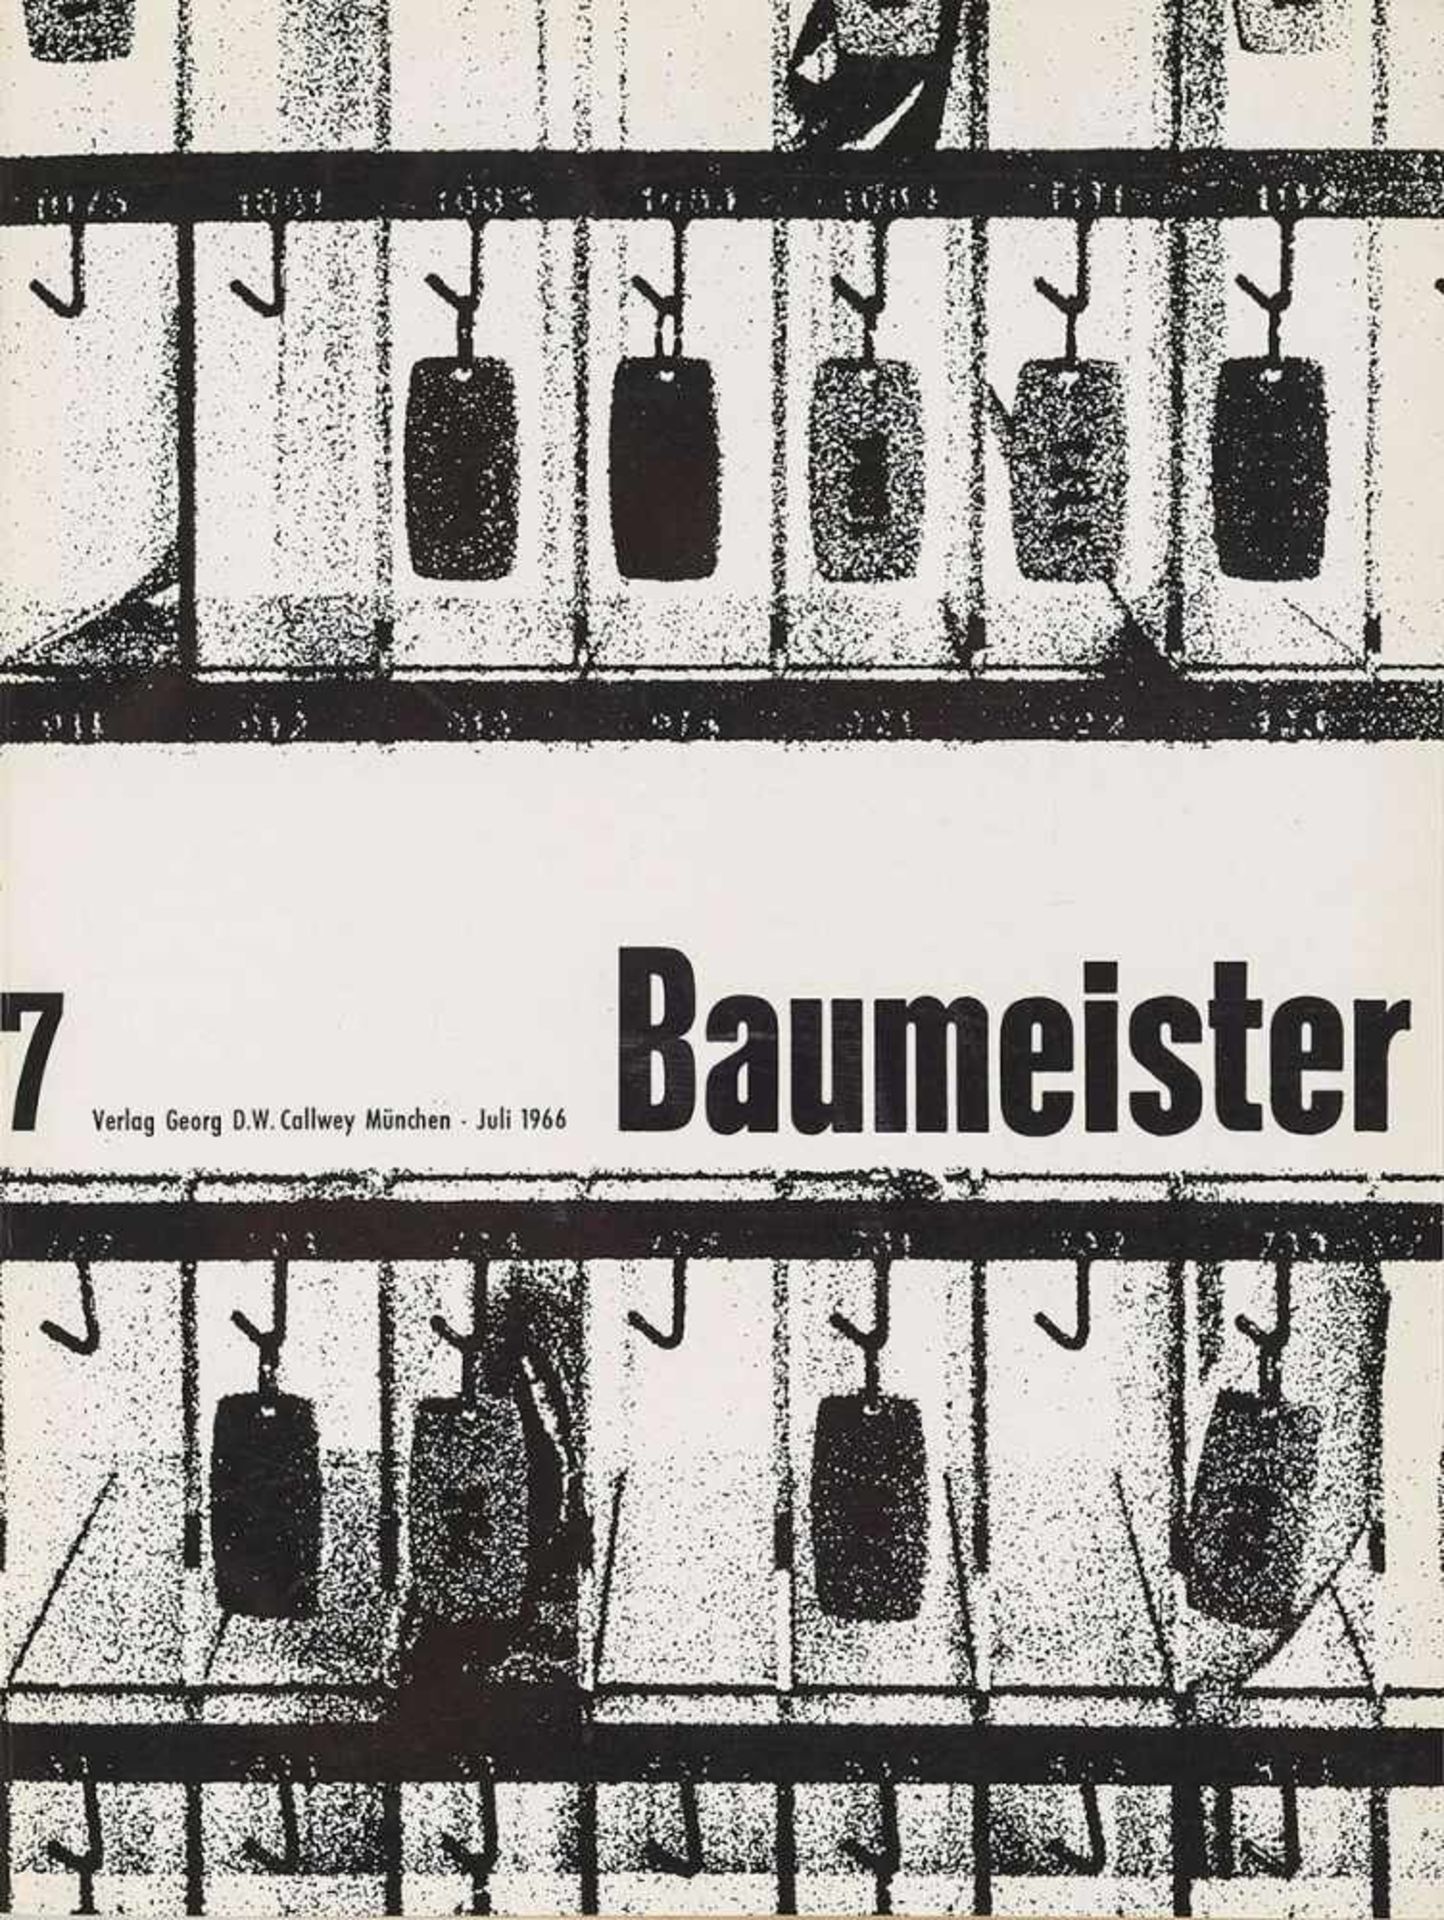 Architektur. – Zeitschrift. – Der Baumeister.20 fortlaufende Jge. in 22 Bdn. 1947-66. Mchn.